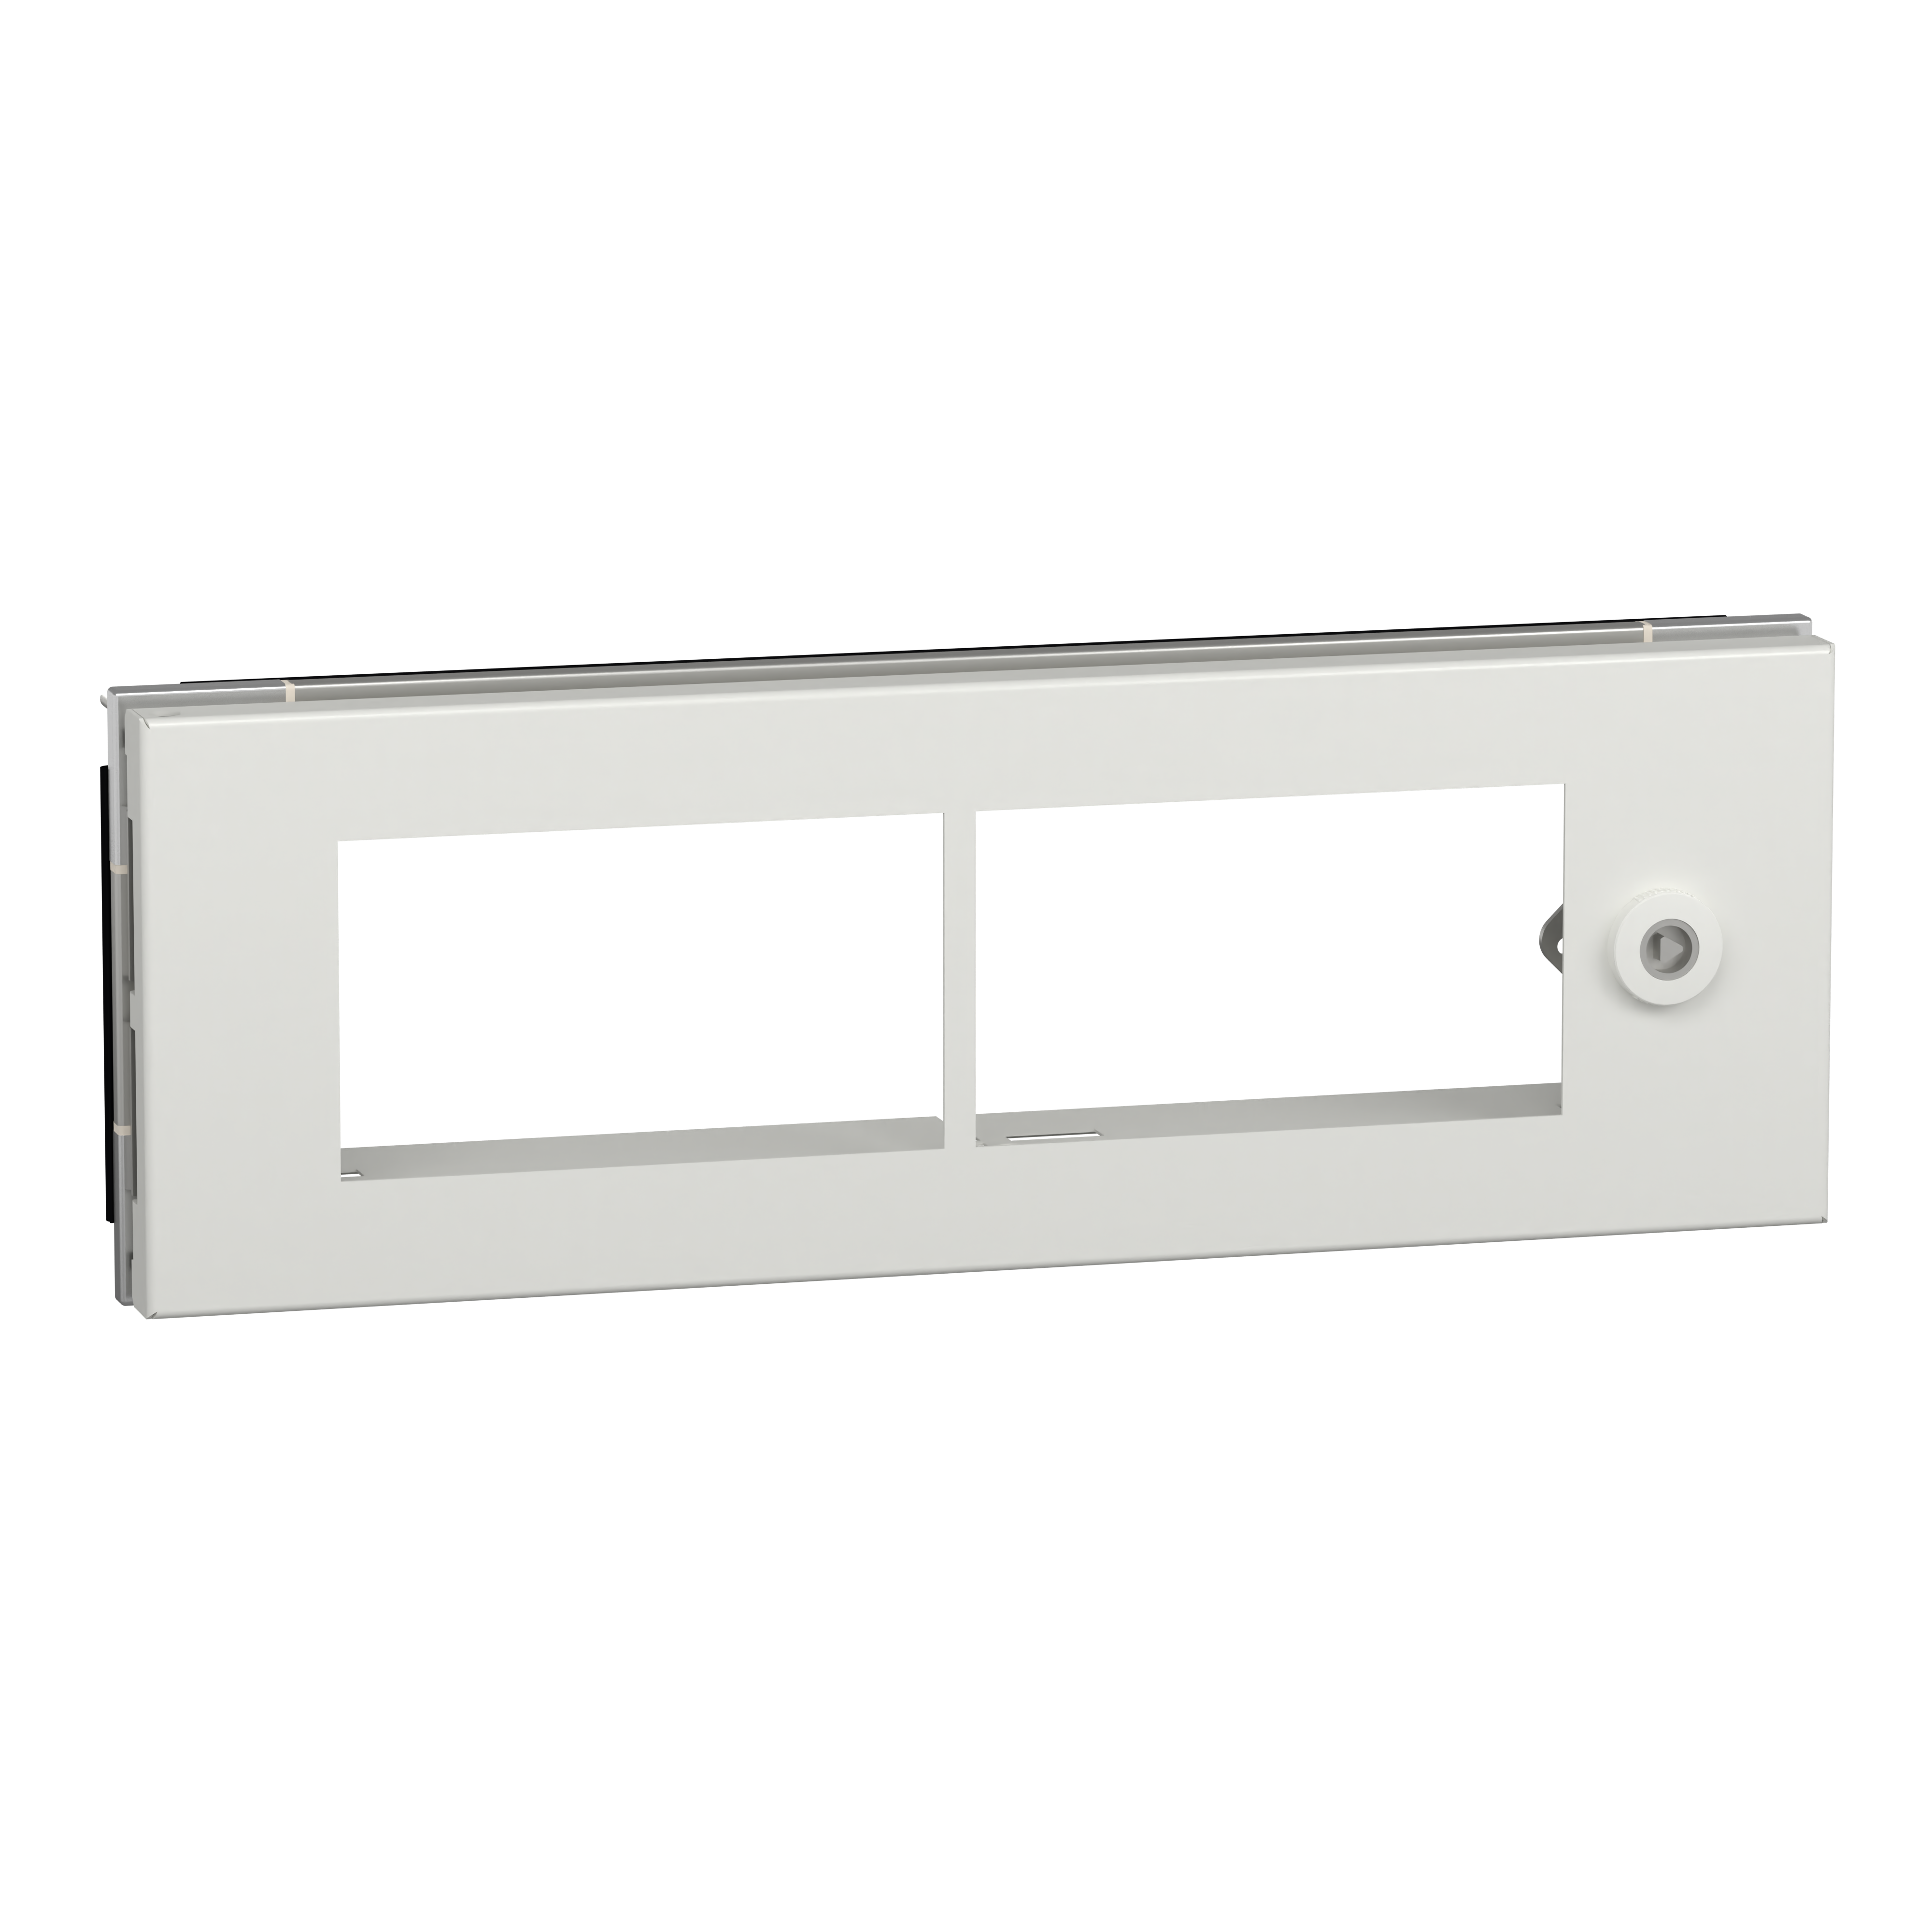 Prisma SeT G: parcijalna vrata sa otvorima i izolacionim maskama za montazu opreme, 4M (H=200mm) za kucista 11-27M, IP55